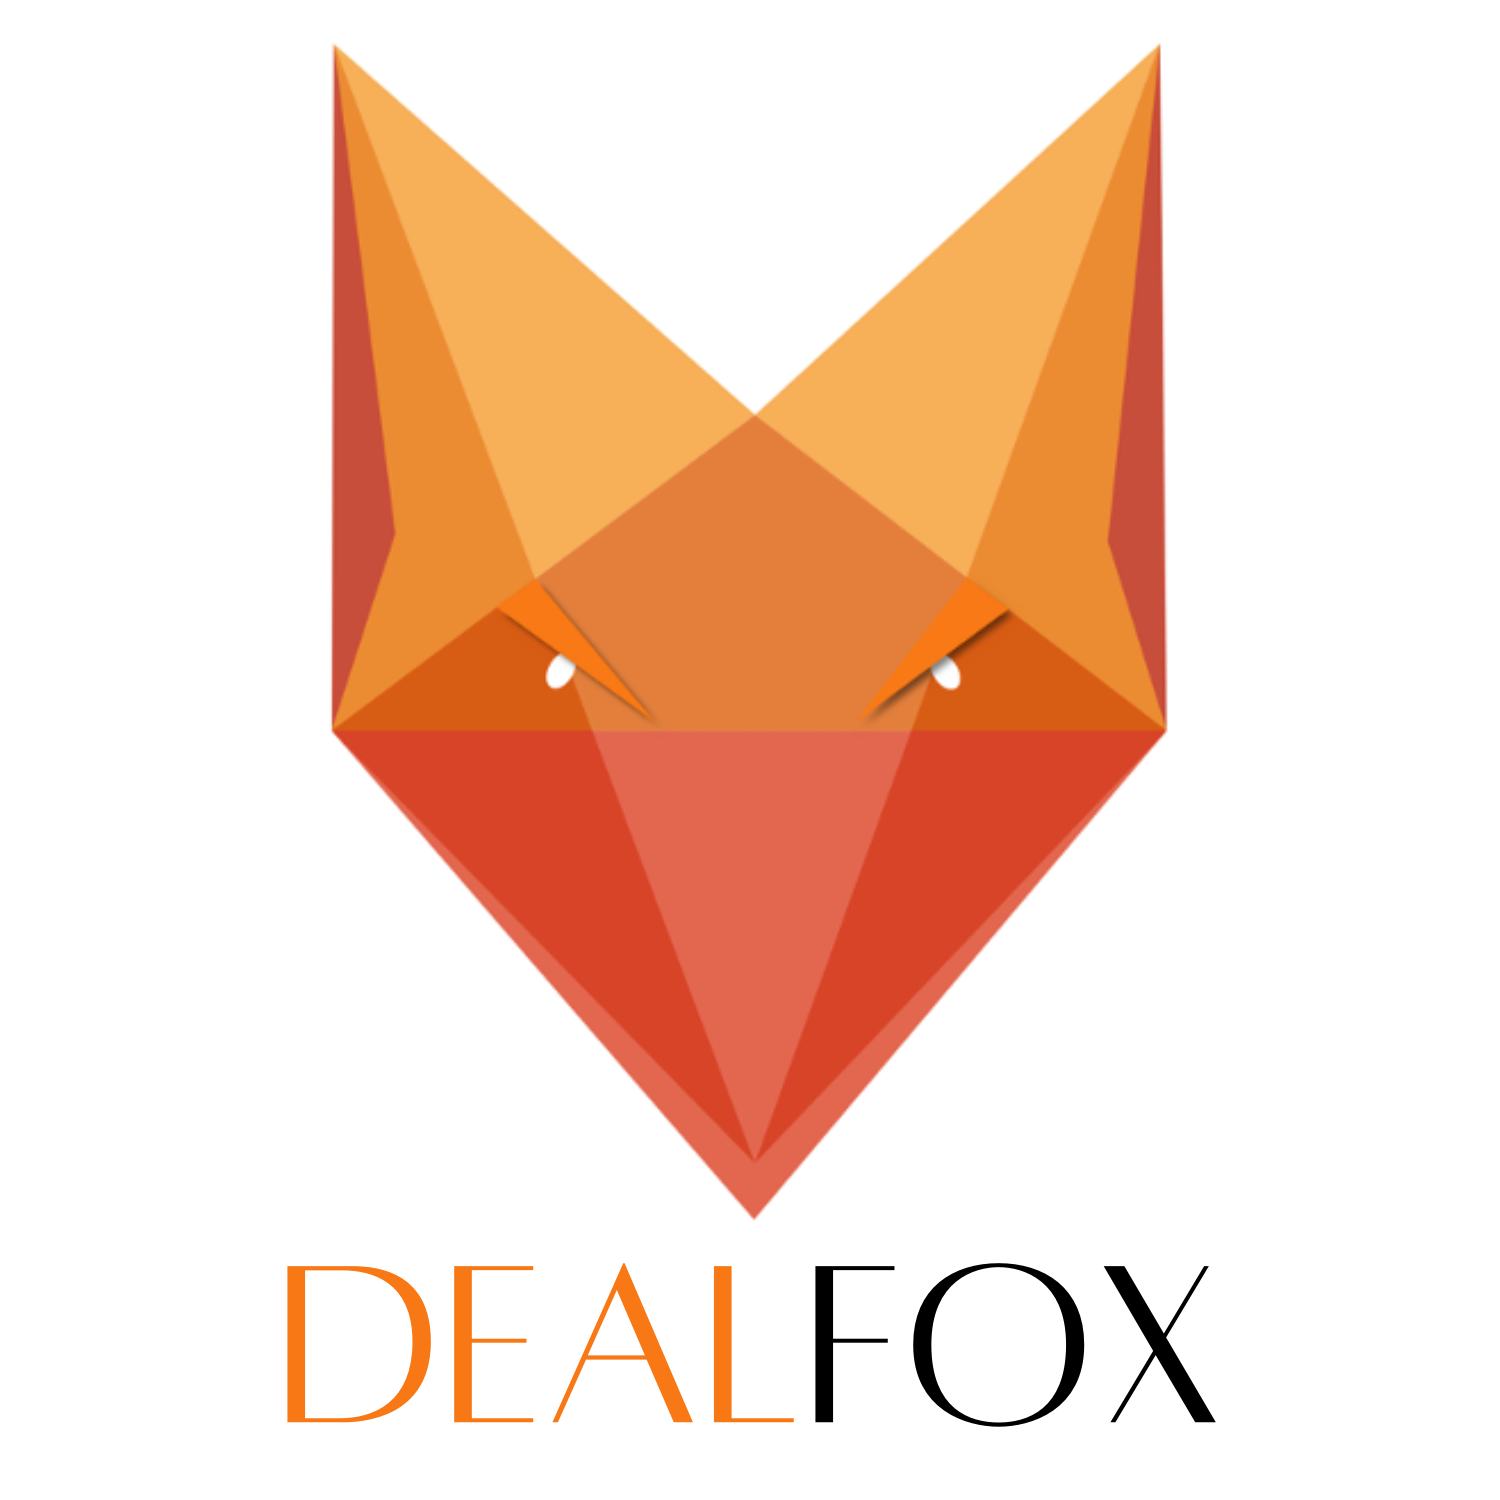 Deal Fox